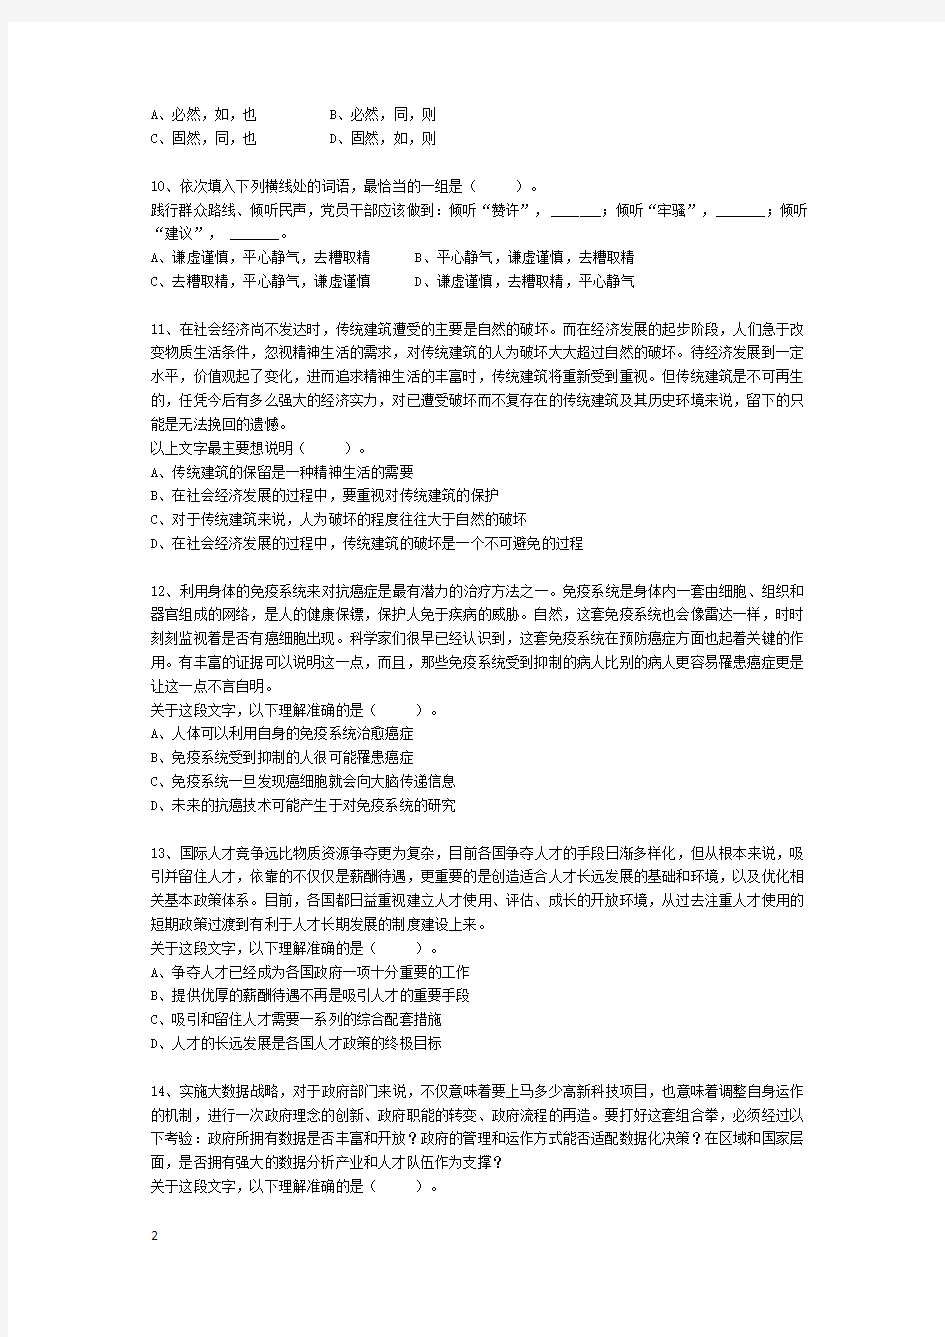 2014年广州市公务员考试《行测》真题-(含答案解析)